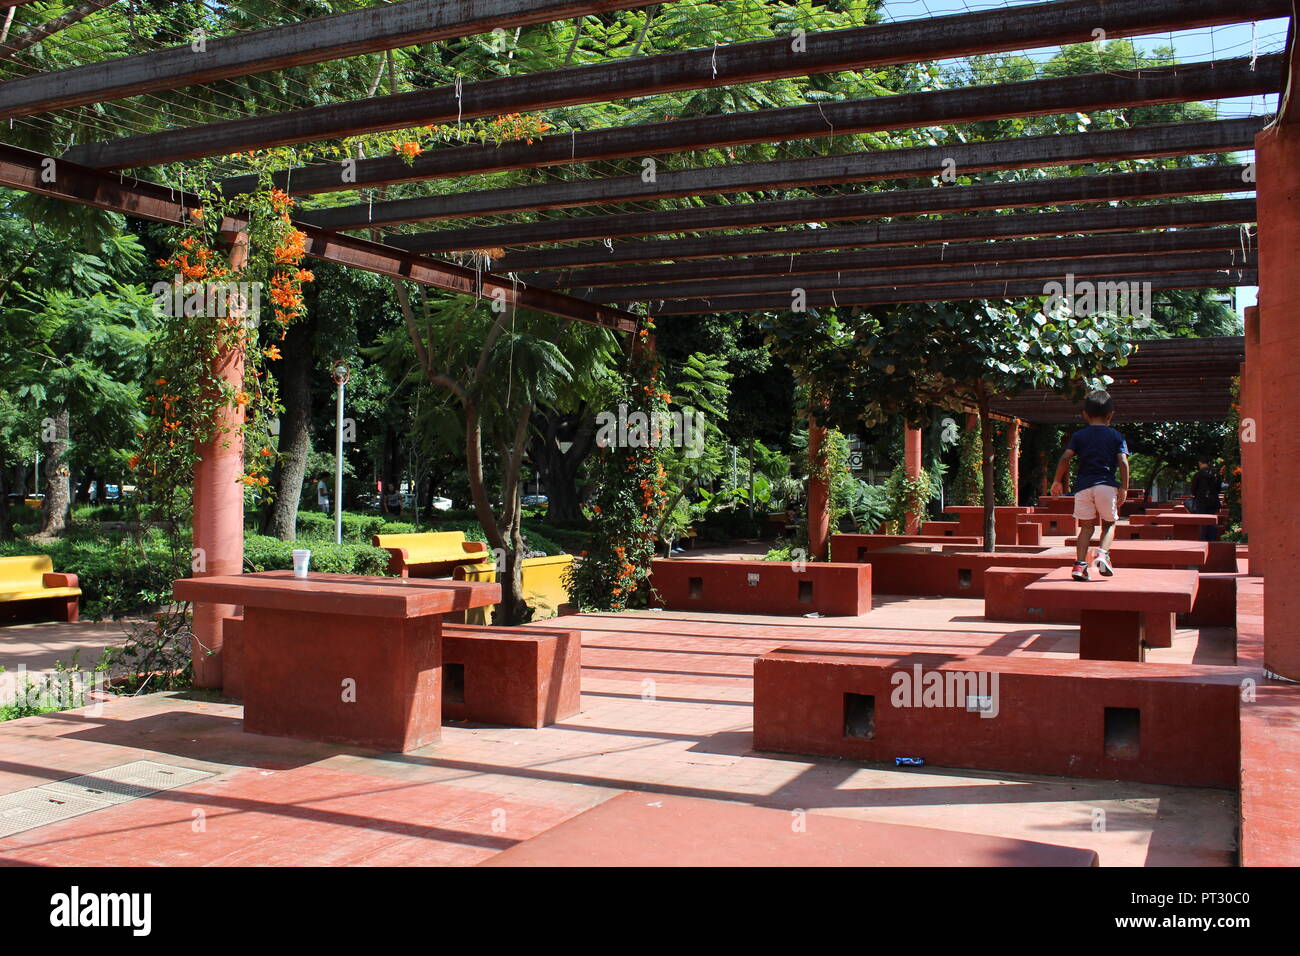 parque rojo en Guadalajara ubicado en avenida Vallarta y avenida Federalismo zona de descanso con mesas y bancas en color rojo decorado con enredadera Stock Photo